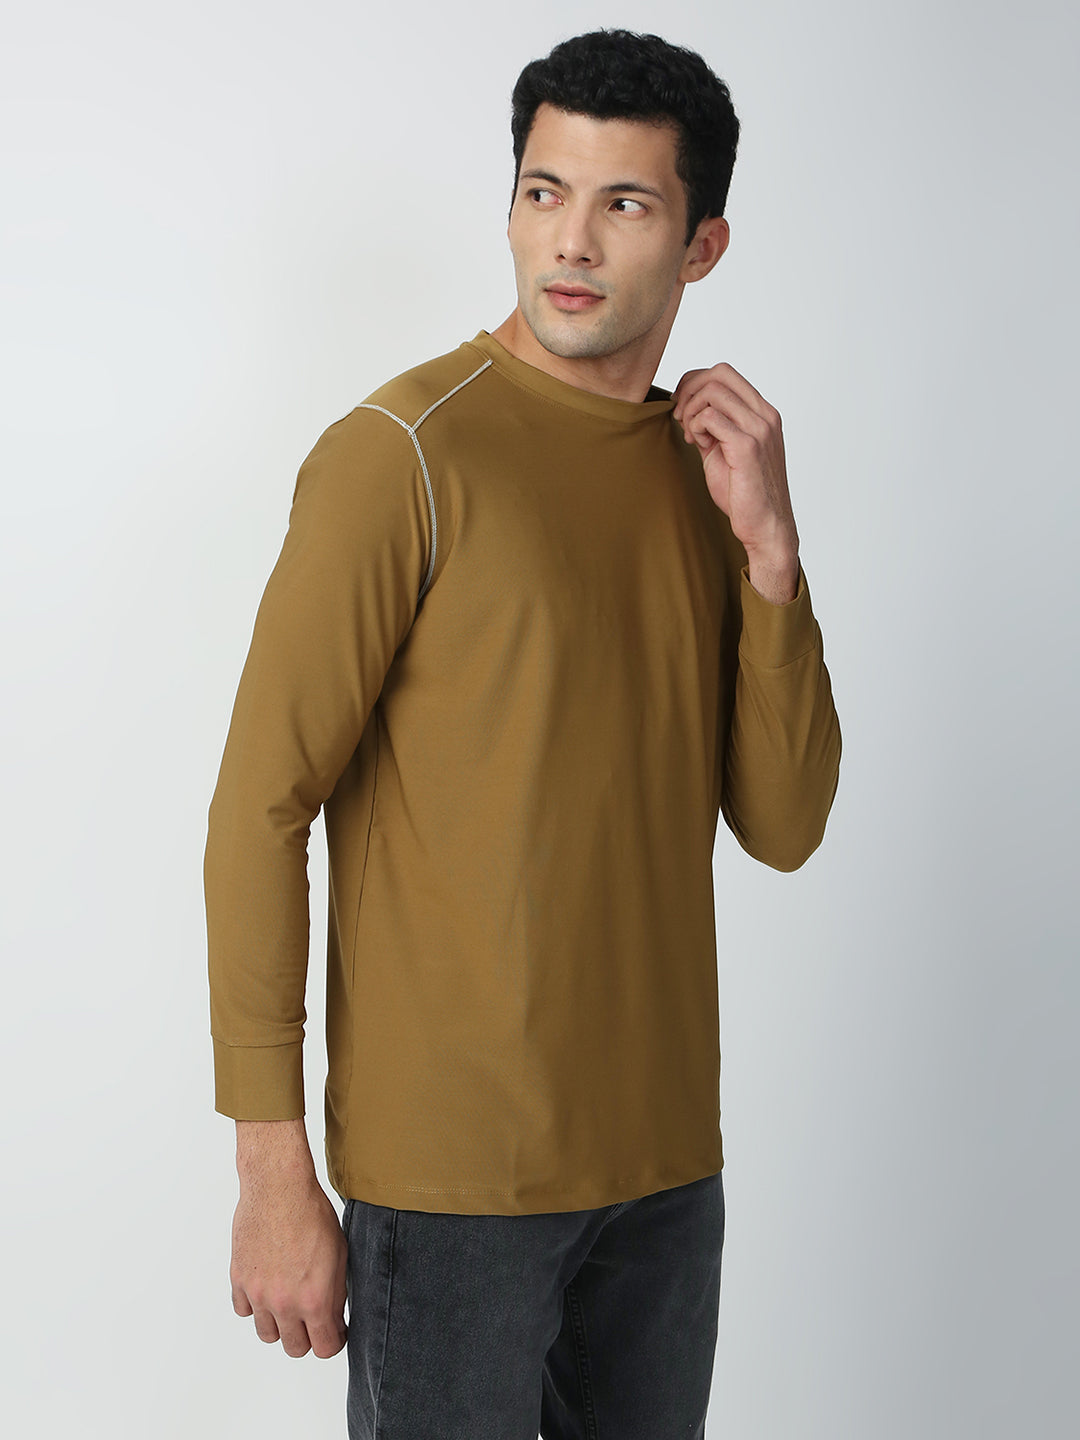 Buy Blamblack Men's Olive Color GYM Wear Plain T-shirt